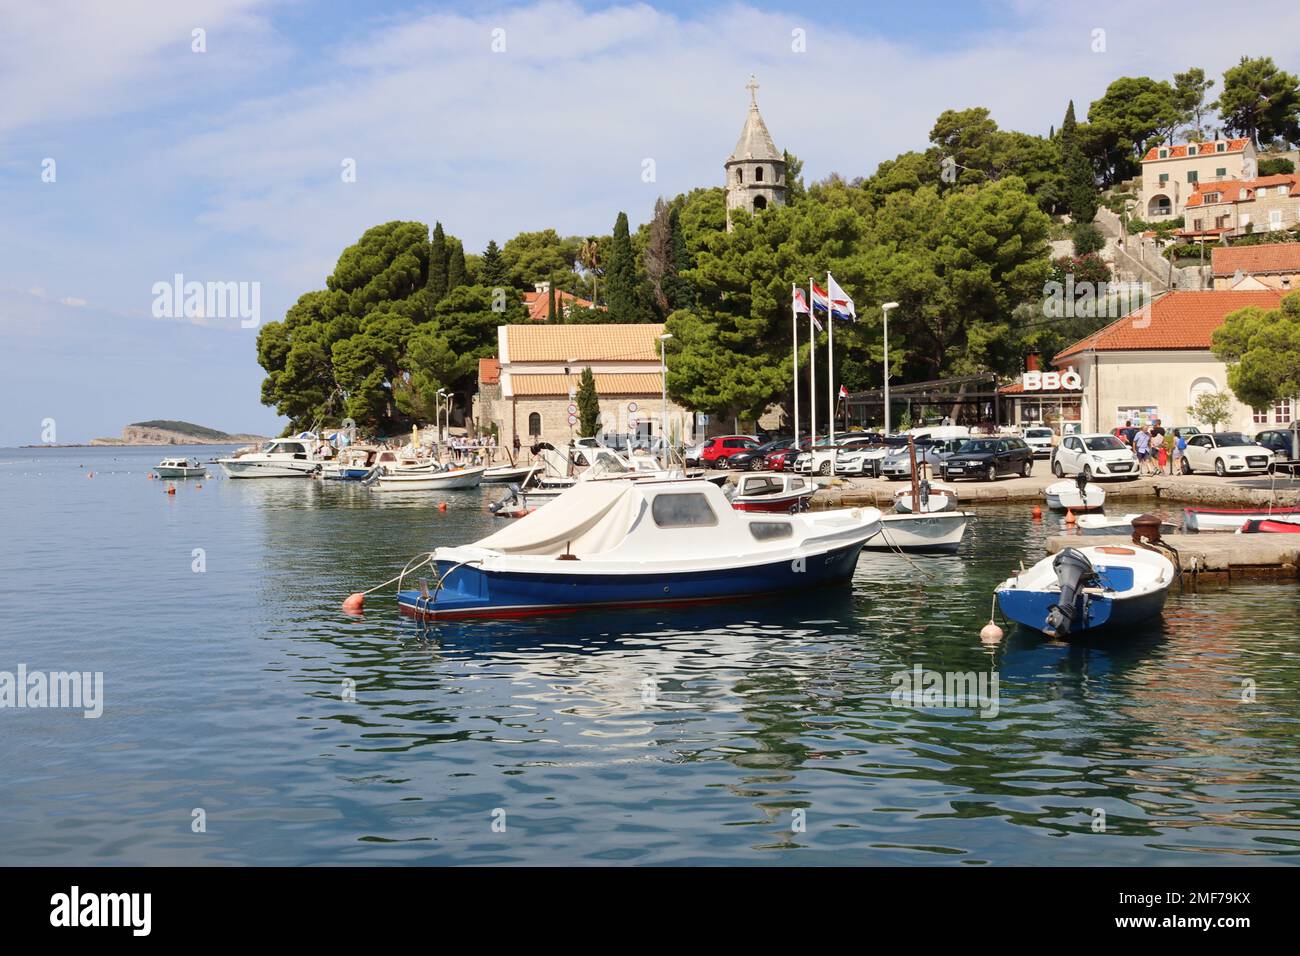 Le port Adriatique à Cavtat, Croatie populaire auprès des touristes et des propriétaires bien nantis de plusieurs millions de yachts à moteur privés. Banque D'Images